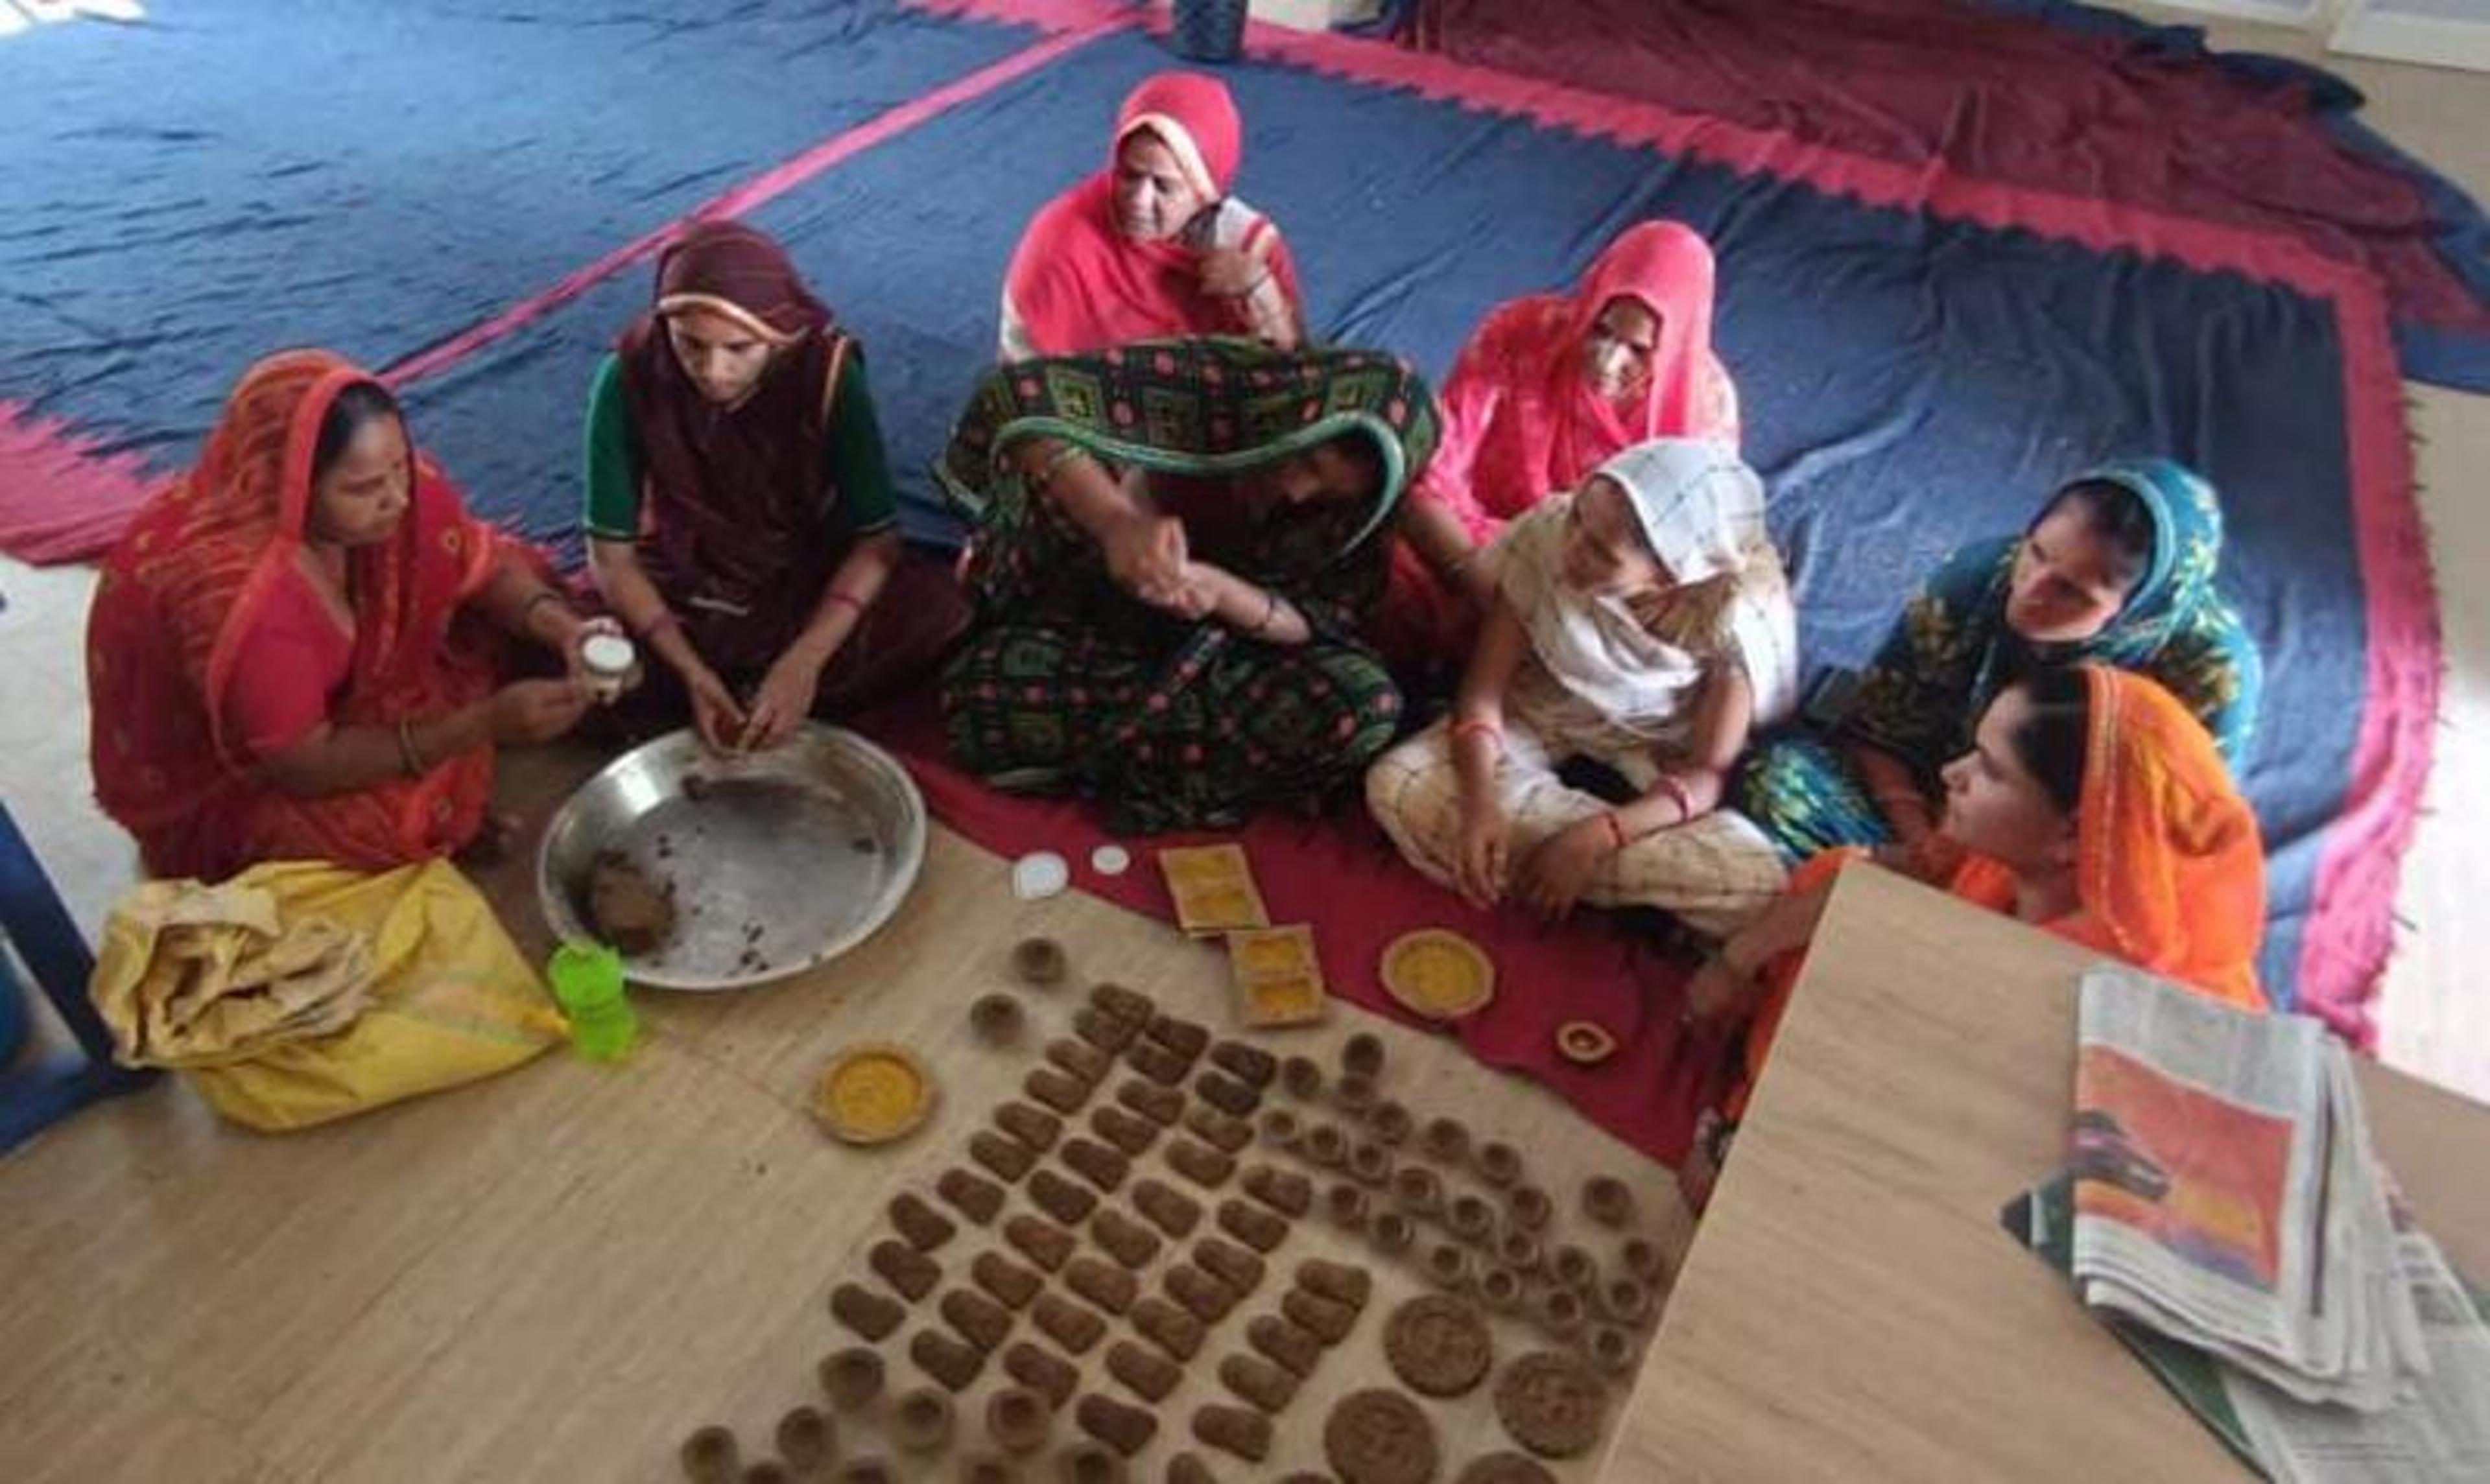 गोबर और पंचगव्य से बन रहे दीपक, महिलाएं कमा रहीं प्रतिदिन 500 रु. तक